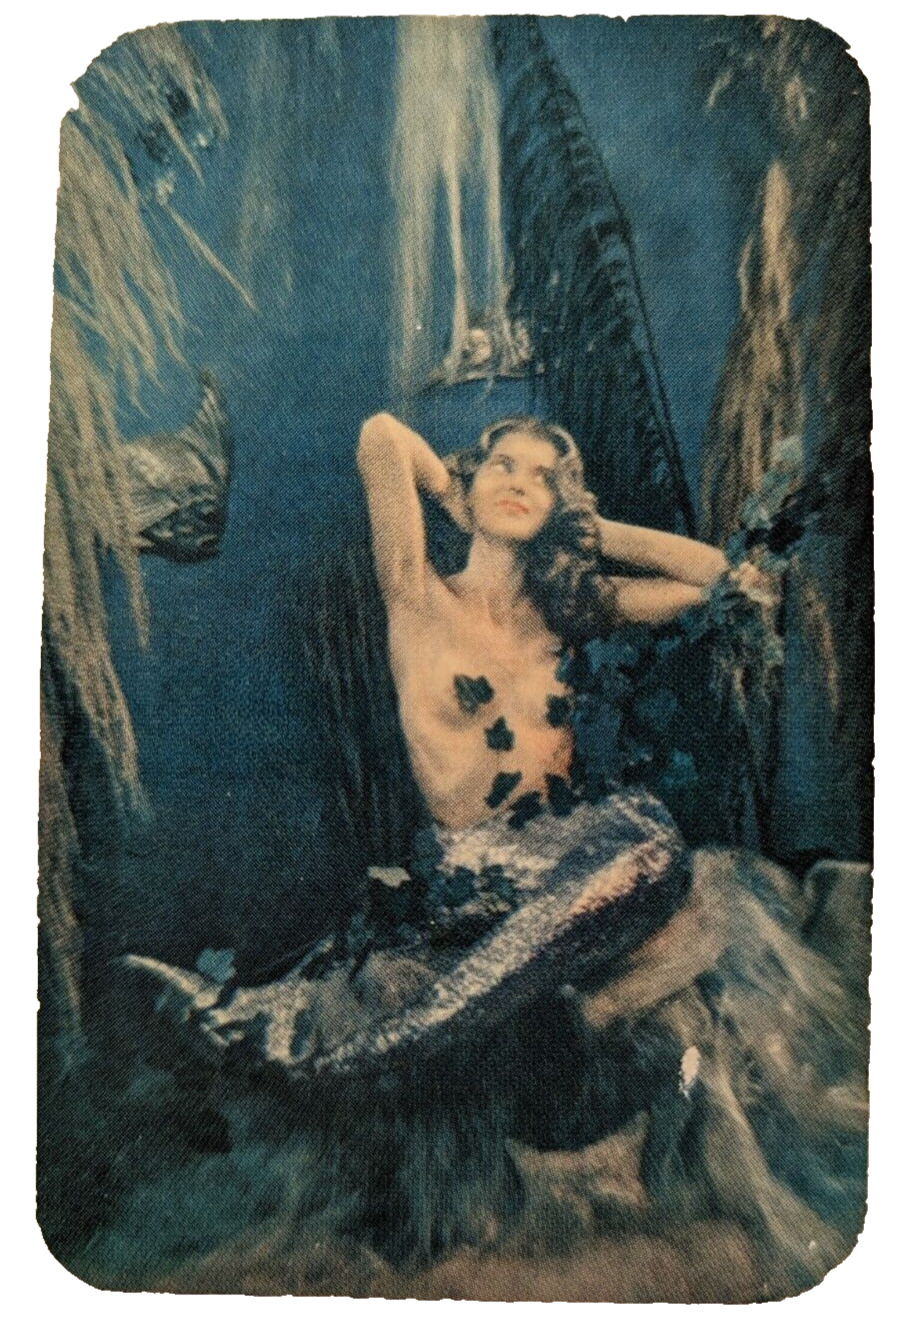 Vintage Advertising Pocket Wallet Calendar Card: 1955 Topless Mermaid Lumiclad